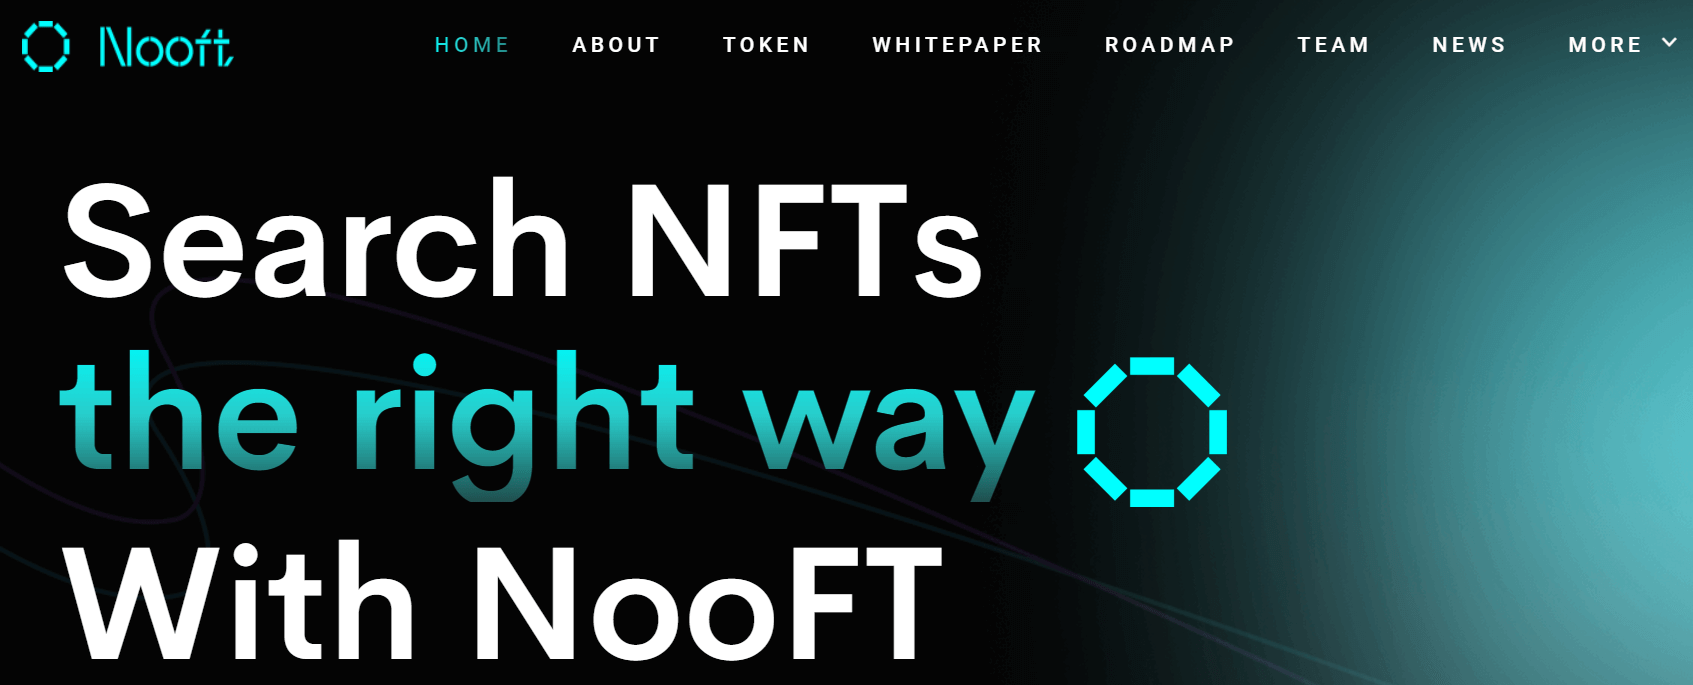 NooFT search engine. 